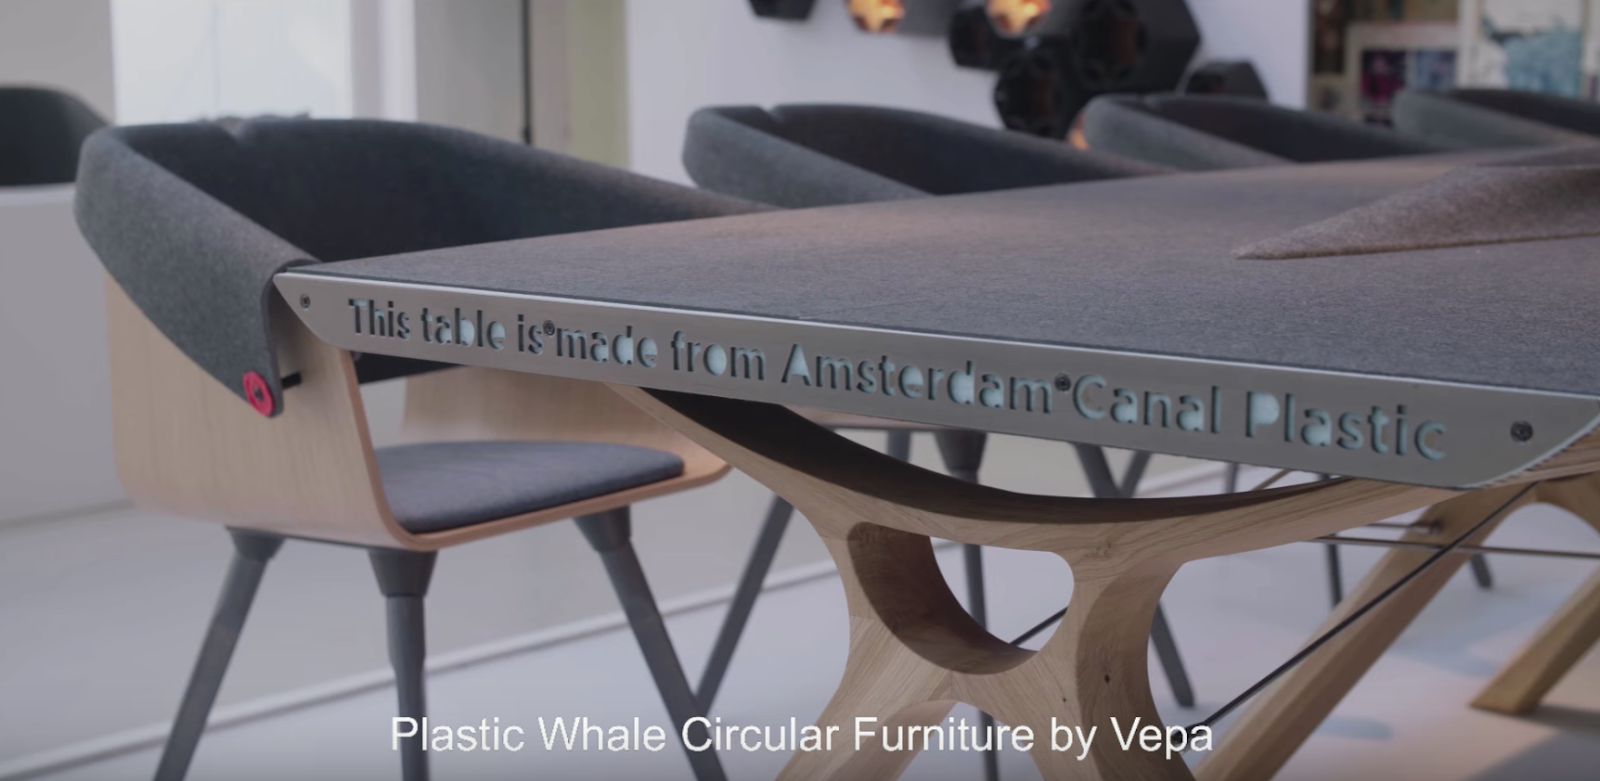 Как се произвеждат мебели от пластмаса в Нидерландия?